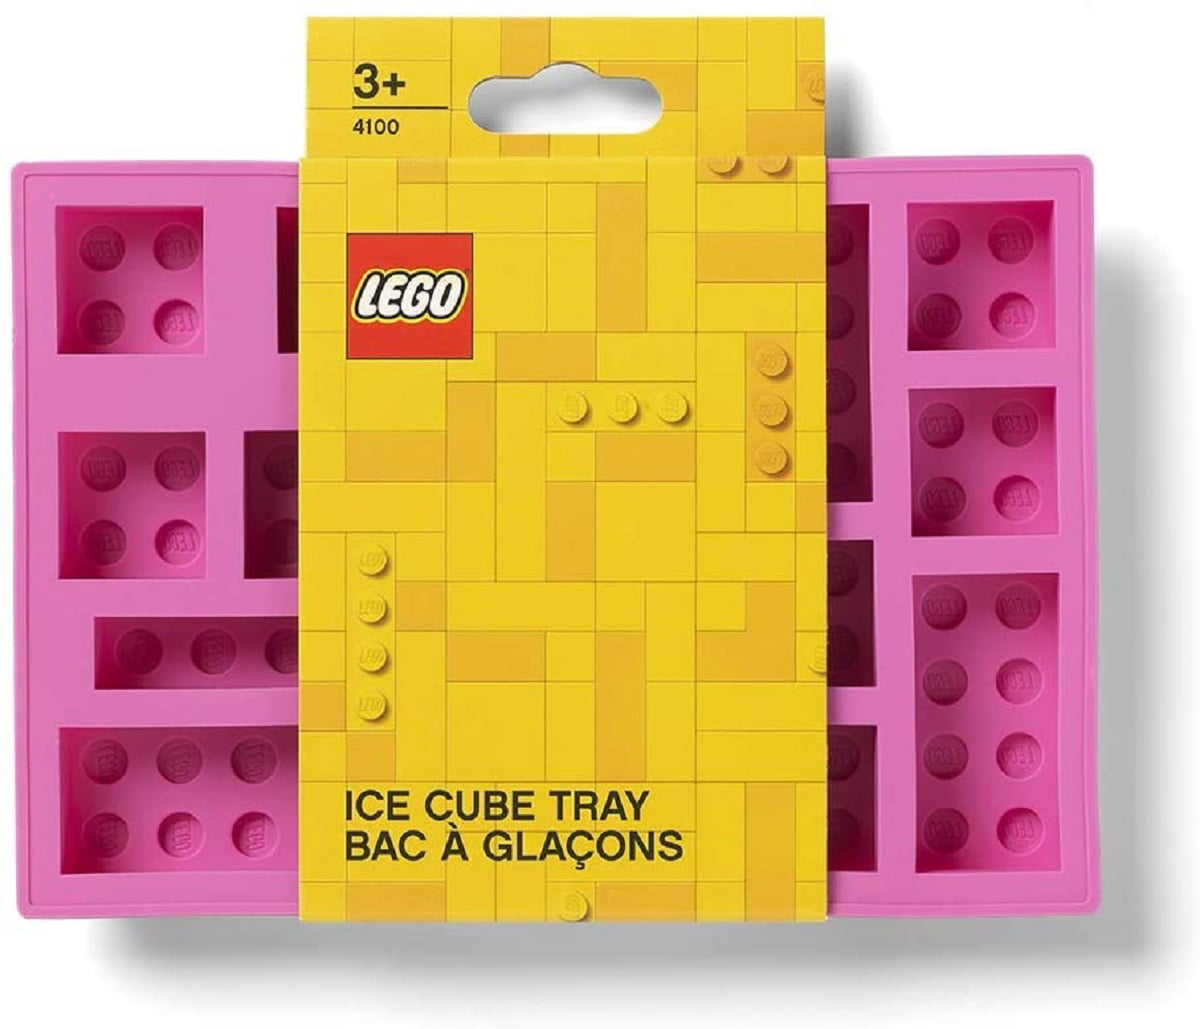 FOOD GRADE Silicone 3D Mold Xmas Party Ice Tray Cube Chocolate Jelly Lego Brick 